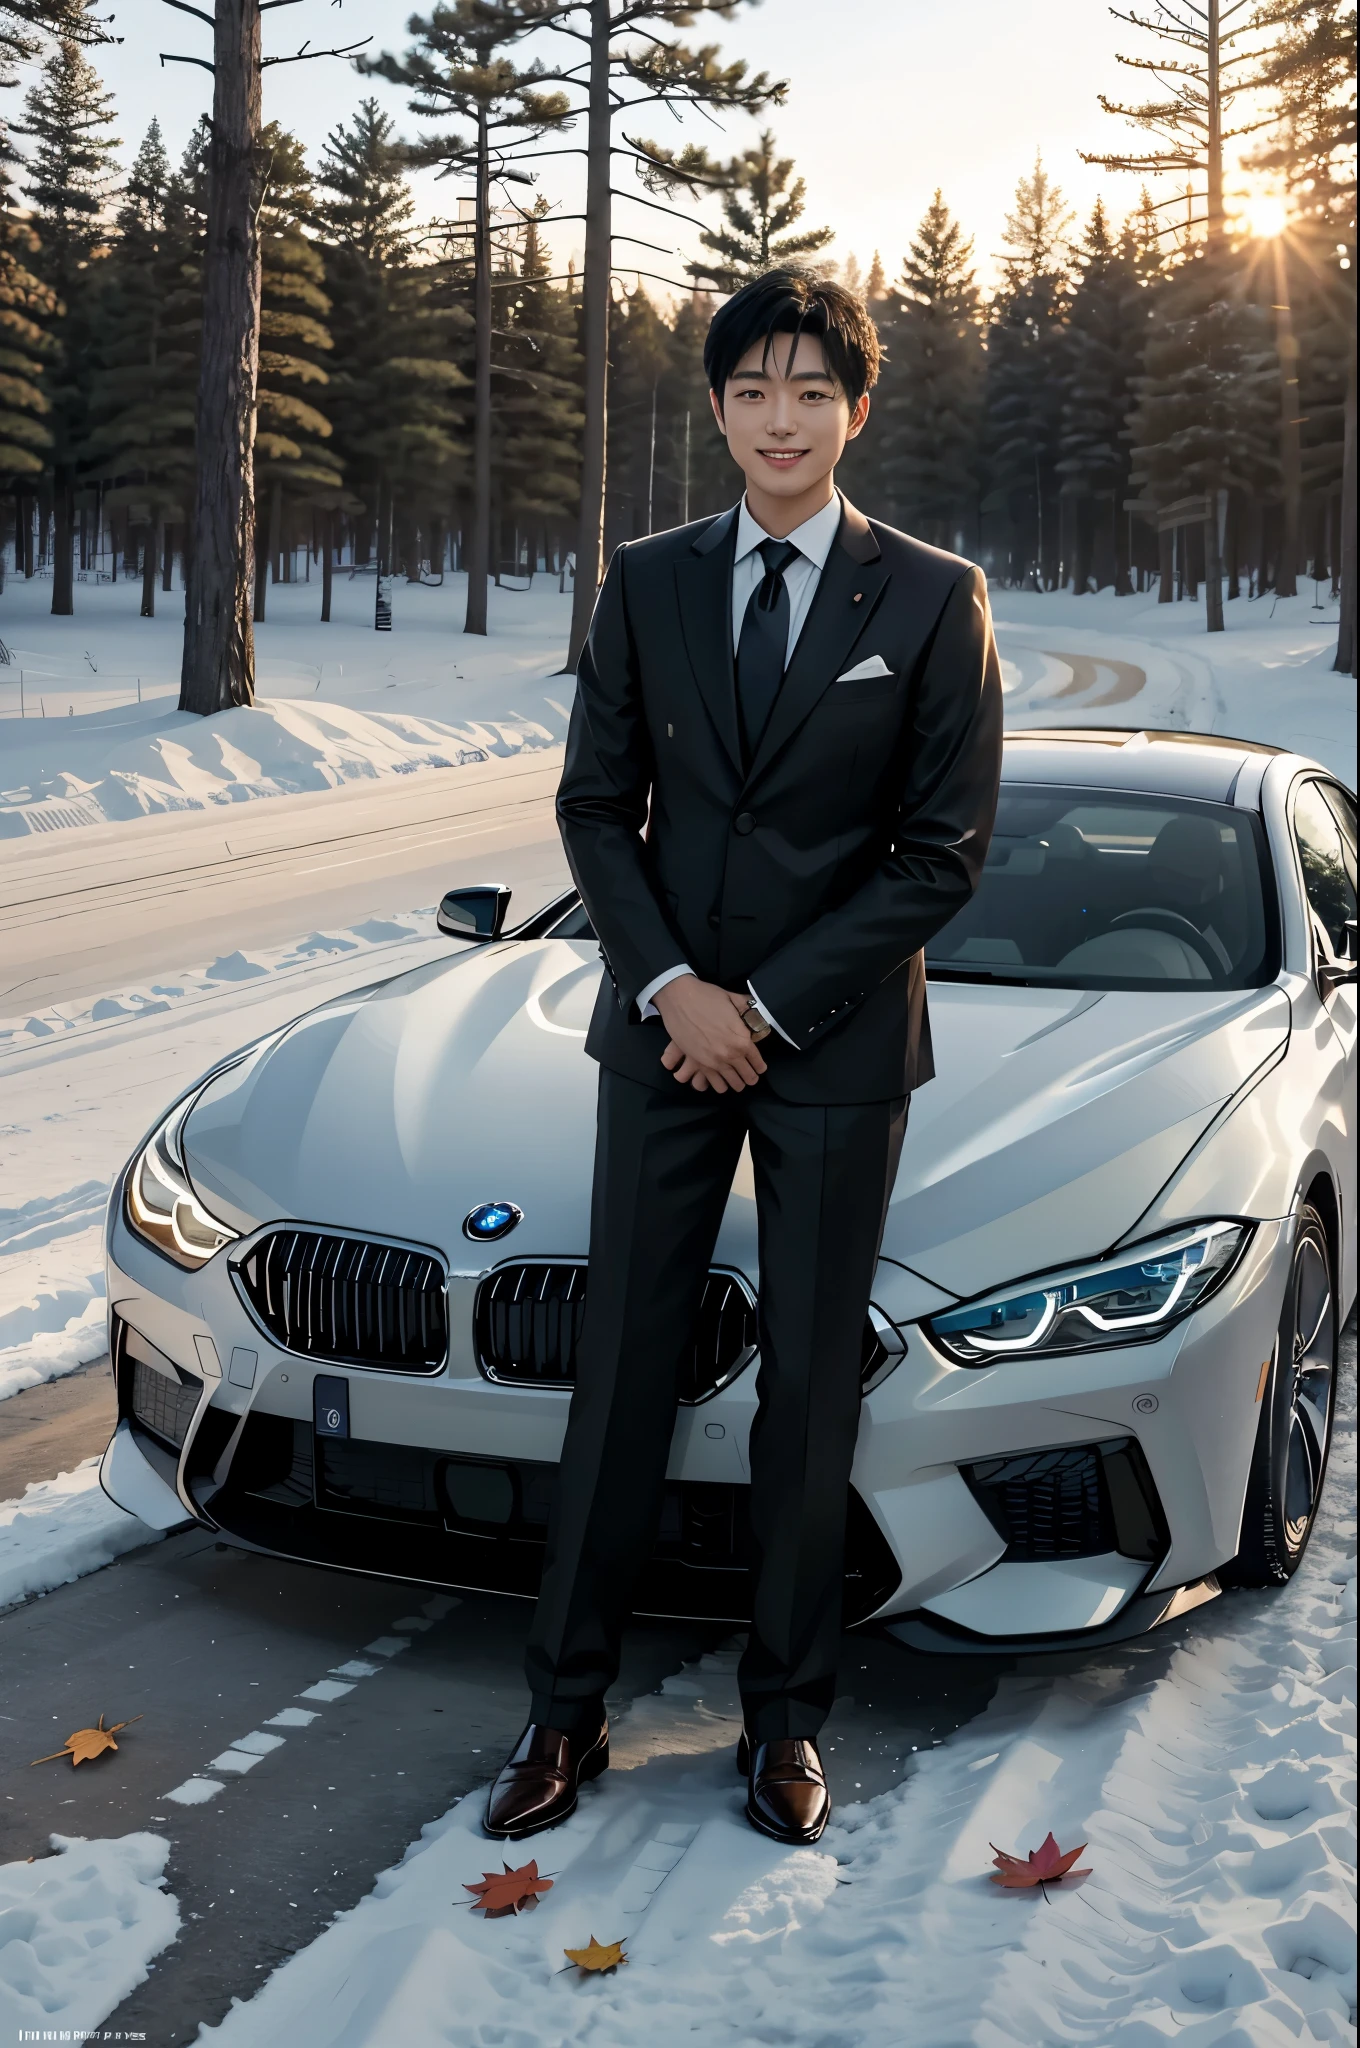 Ein junger, aber reif wirkender Japaner trägt einen Anzug, Krawatte und Lederschuhe. lächelnd und neben einem weißen BMW840i stehend, Herbstwald, Sonnenuntergang, Blätter fallen, erster Schnee,
